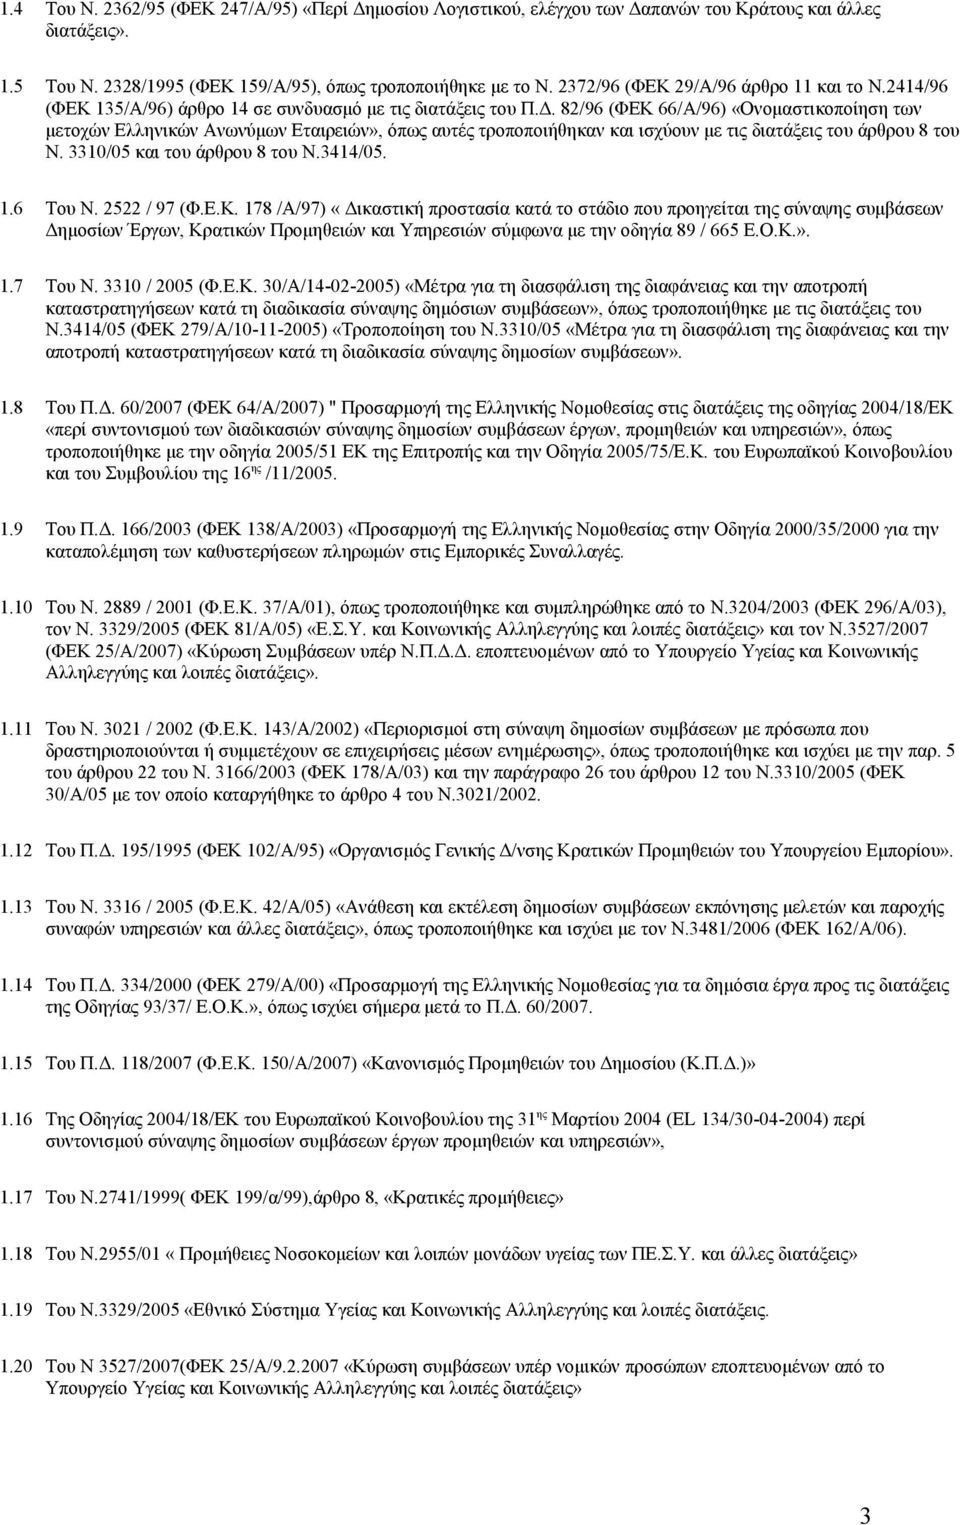 82/96 (ΦΕΚ 66/Α/96) «Ονομαστικοποίηση των μετοχών Ελληνικών Ανωνύμων Εταιρειών», όπως αυτές τροποποιήθηκαν και ισχύουν με τις διατάξεις του άρθρου 8 του Ν. 3310/05 και του άρθρου 8 του Ν.3414/05. 1.